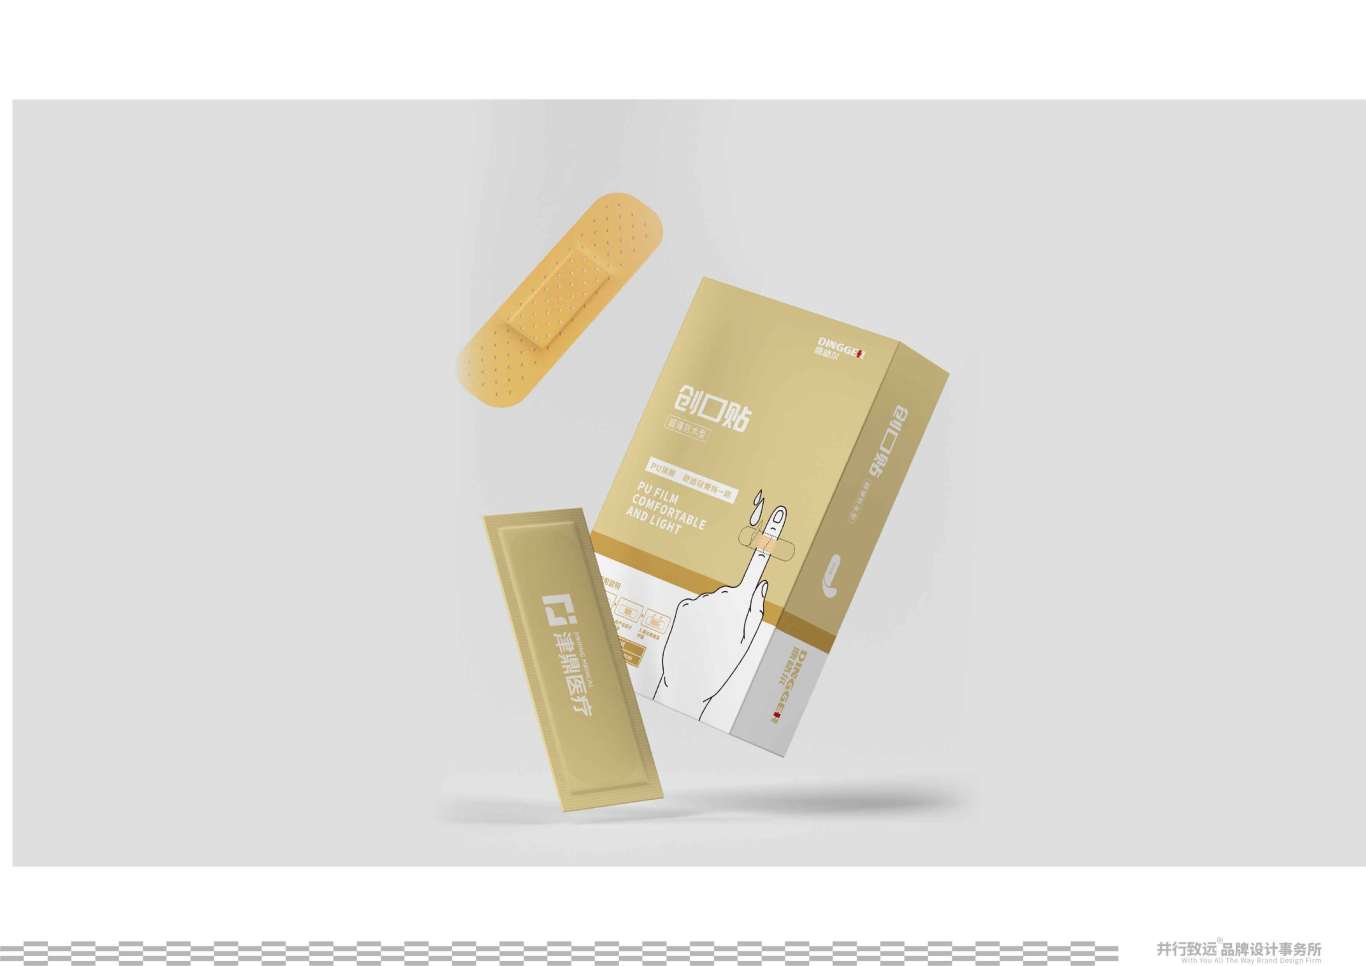 鼎格尔品牌创口贴系列包装设计图2